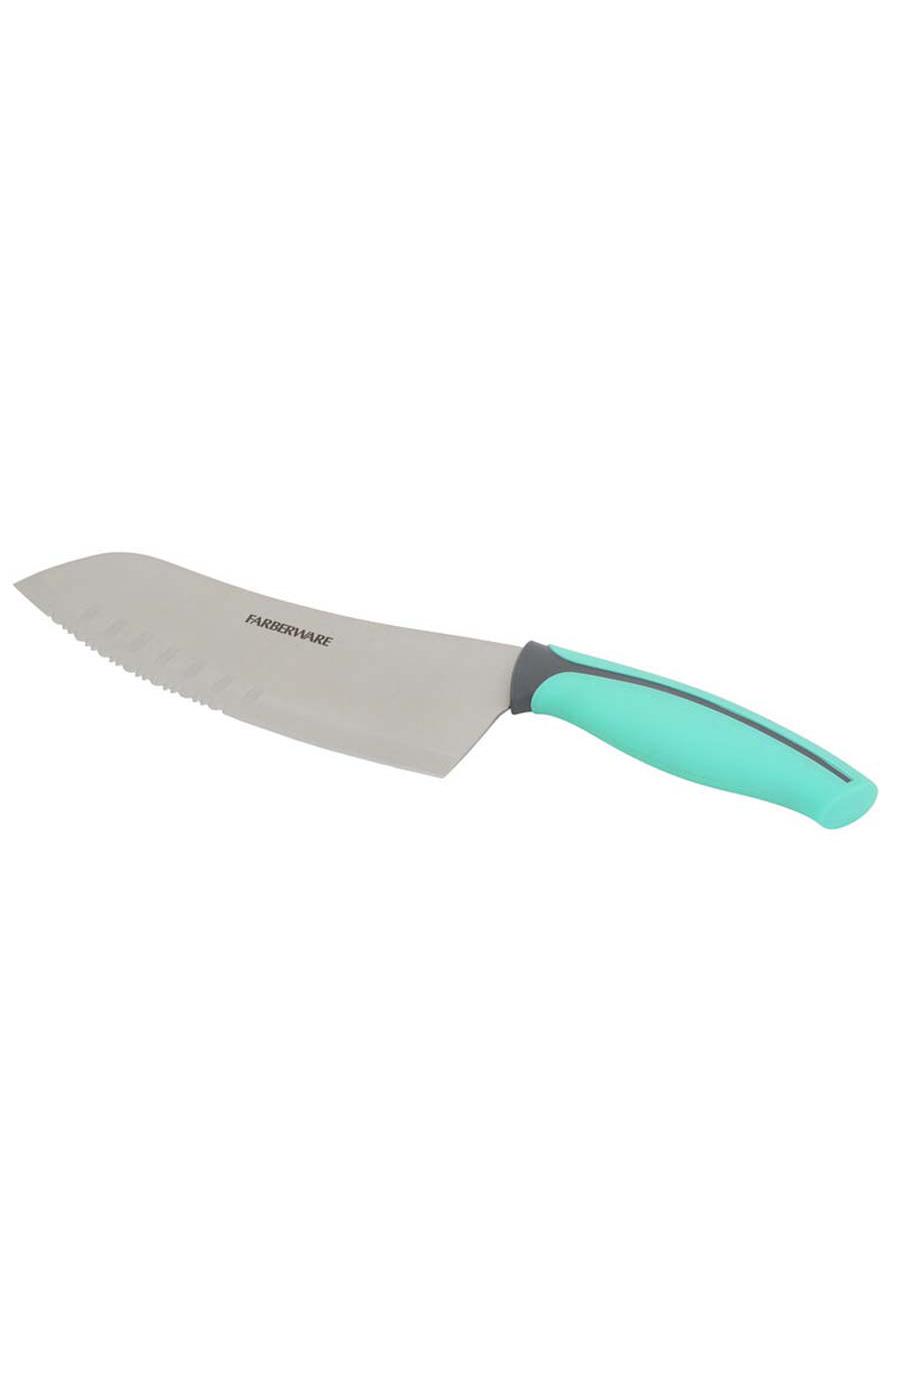 Buy Farberware Paring Knife Set